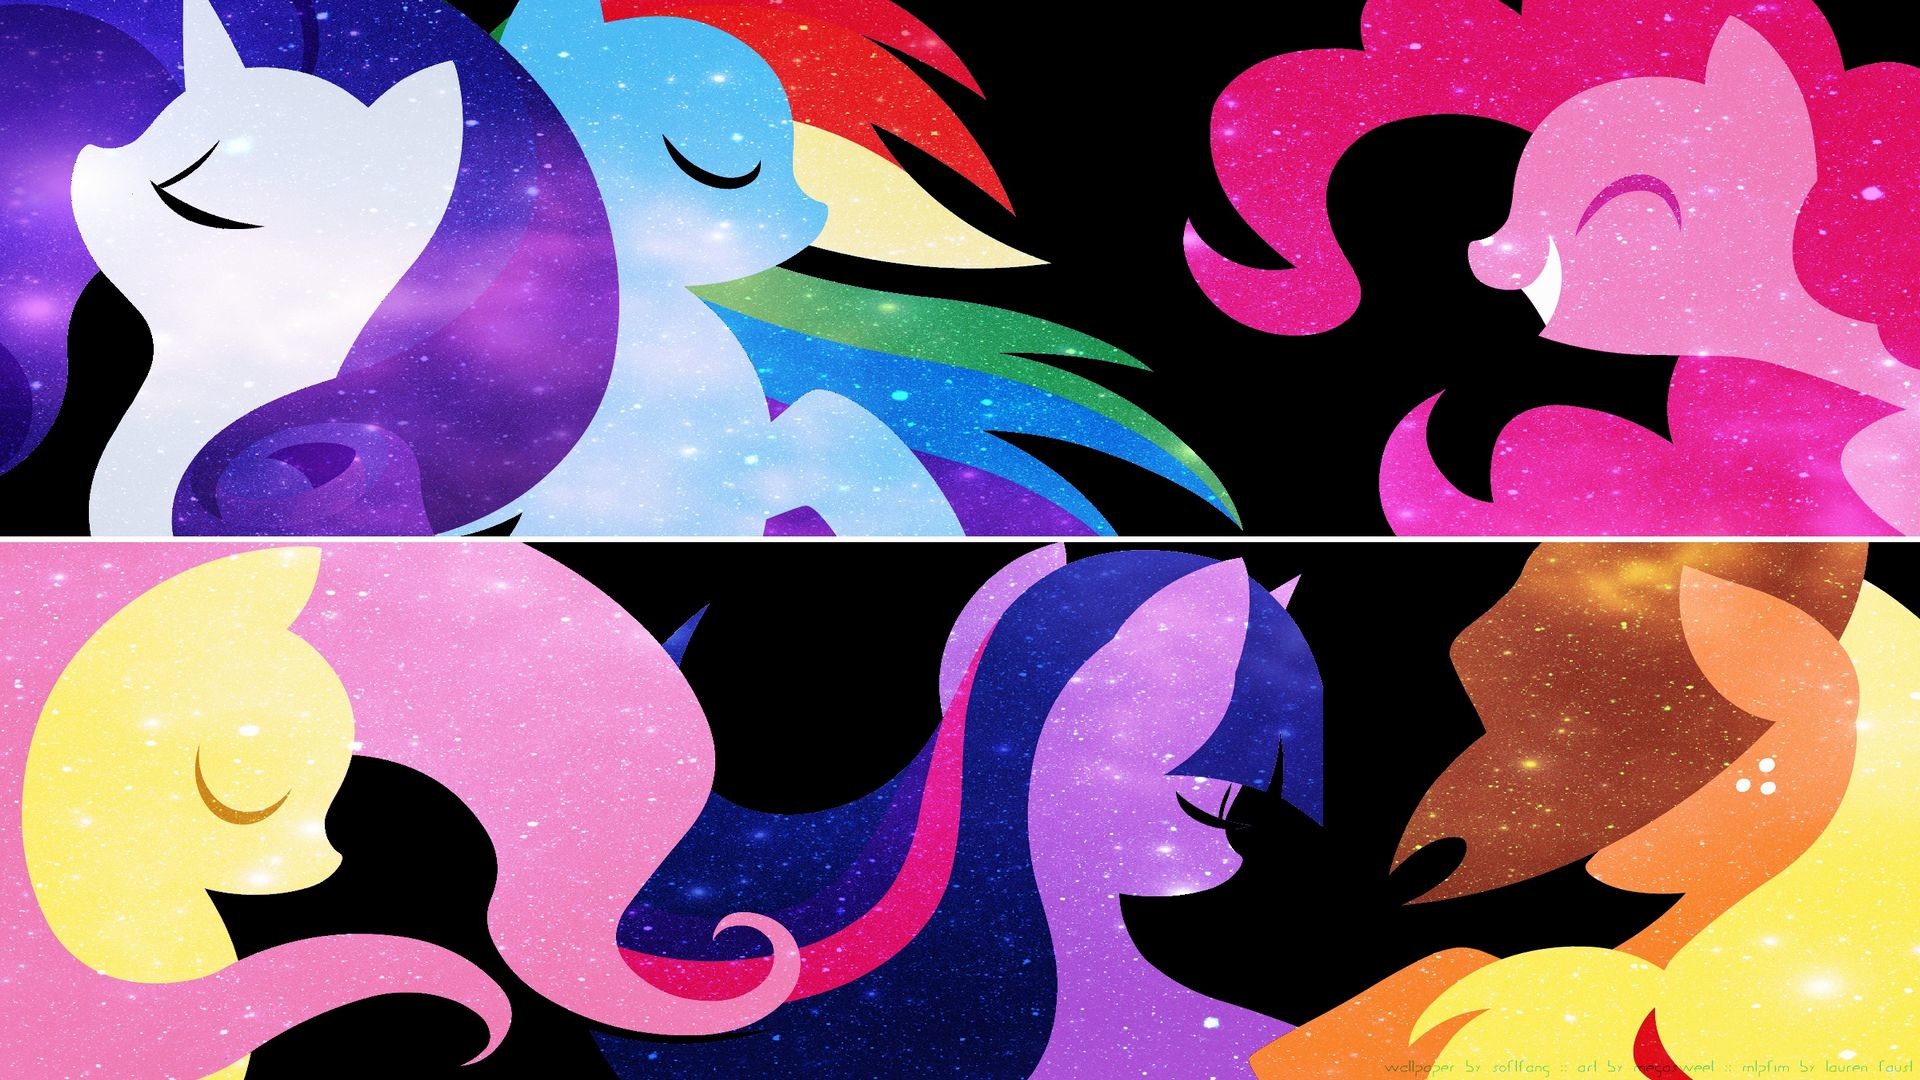 1920x1080 `+Â°â*'Ã`~ images on Pinterest | Ponies, My little pony and Friendship